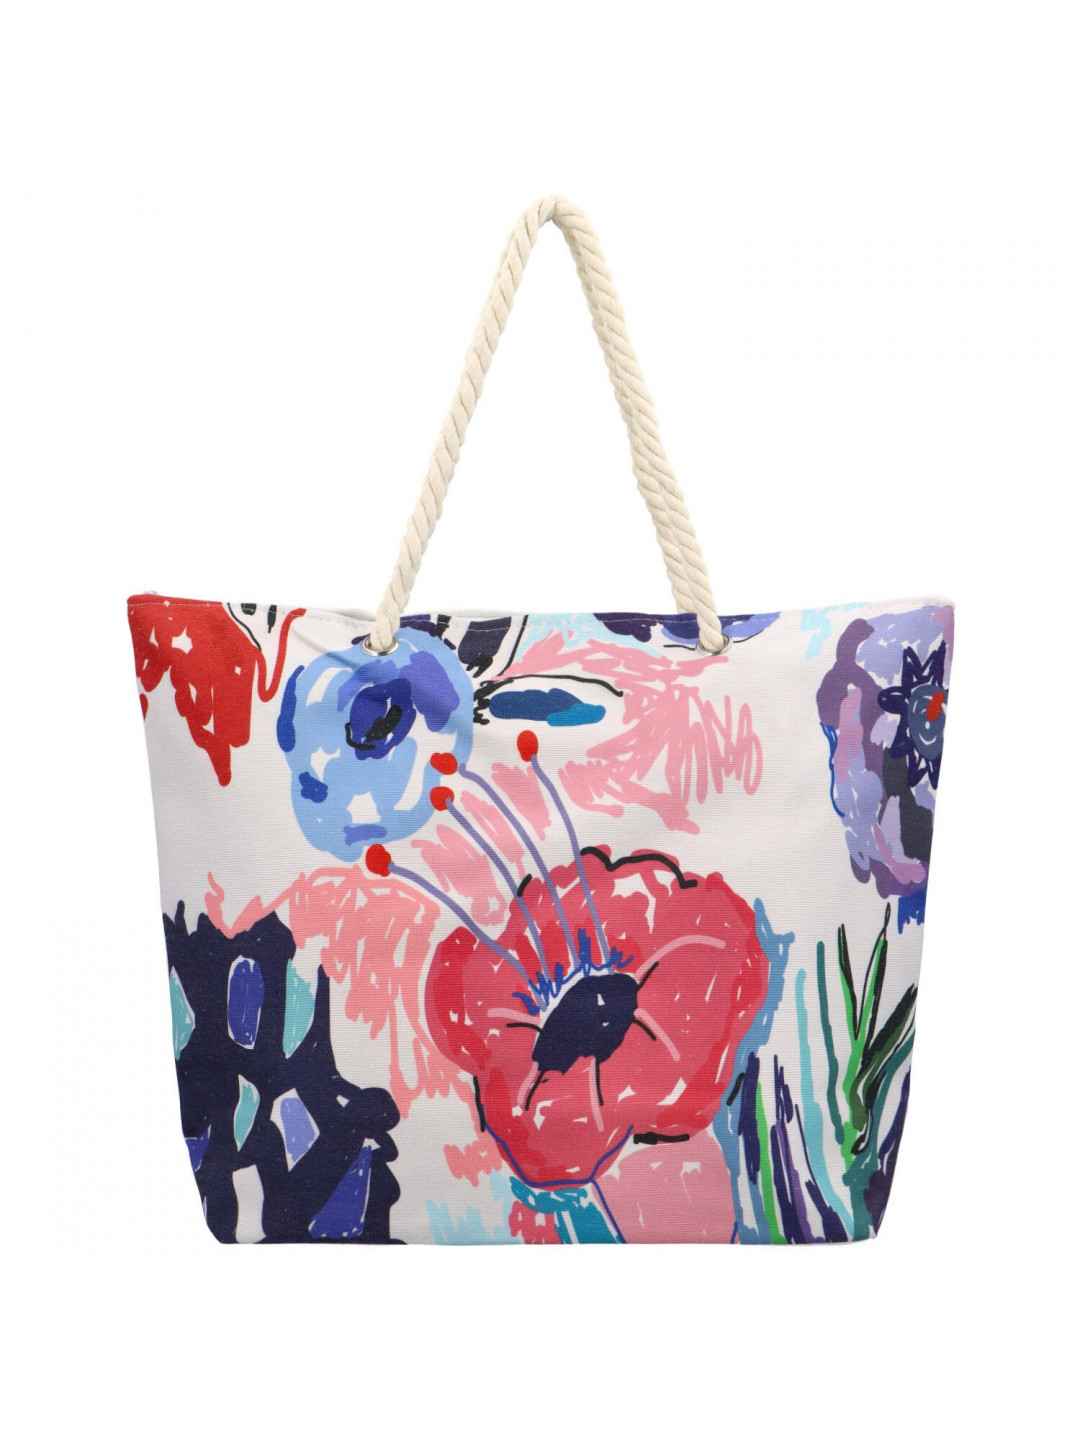 Dámská kabelka přes rameno béžová květy – Bellugio Vieneta